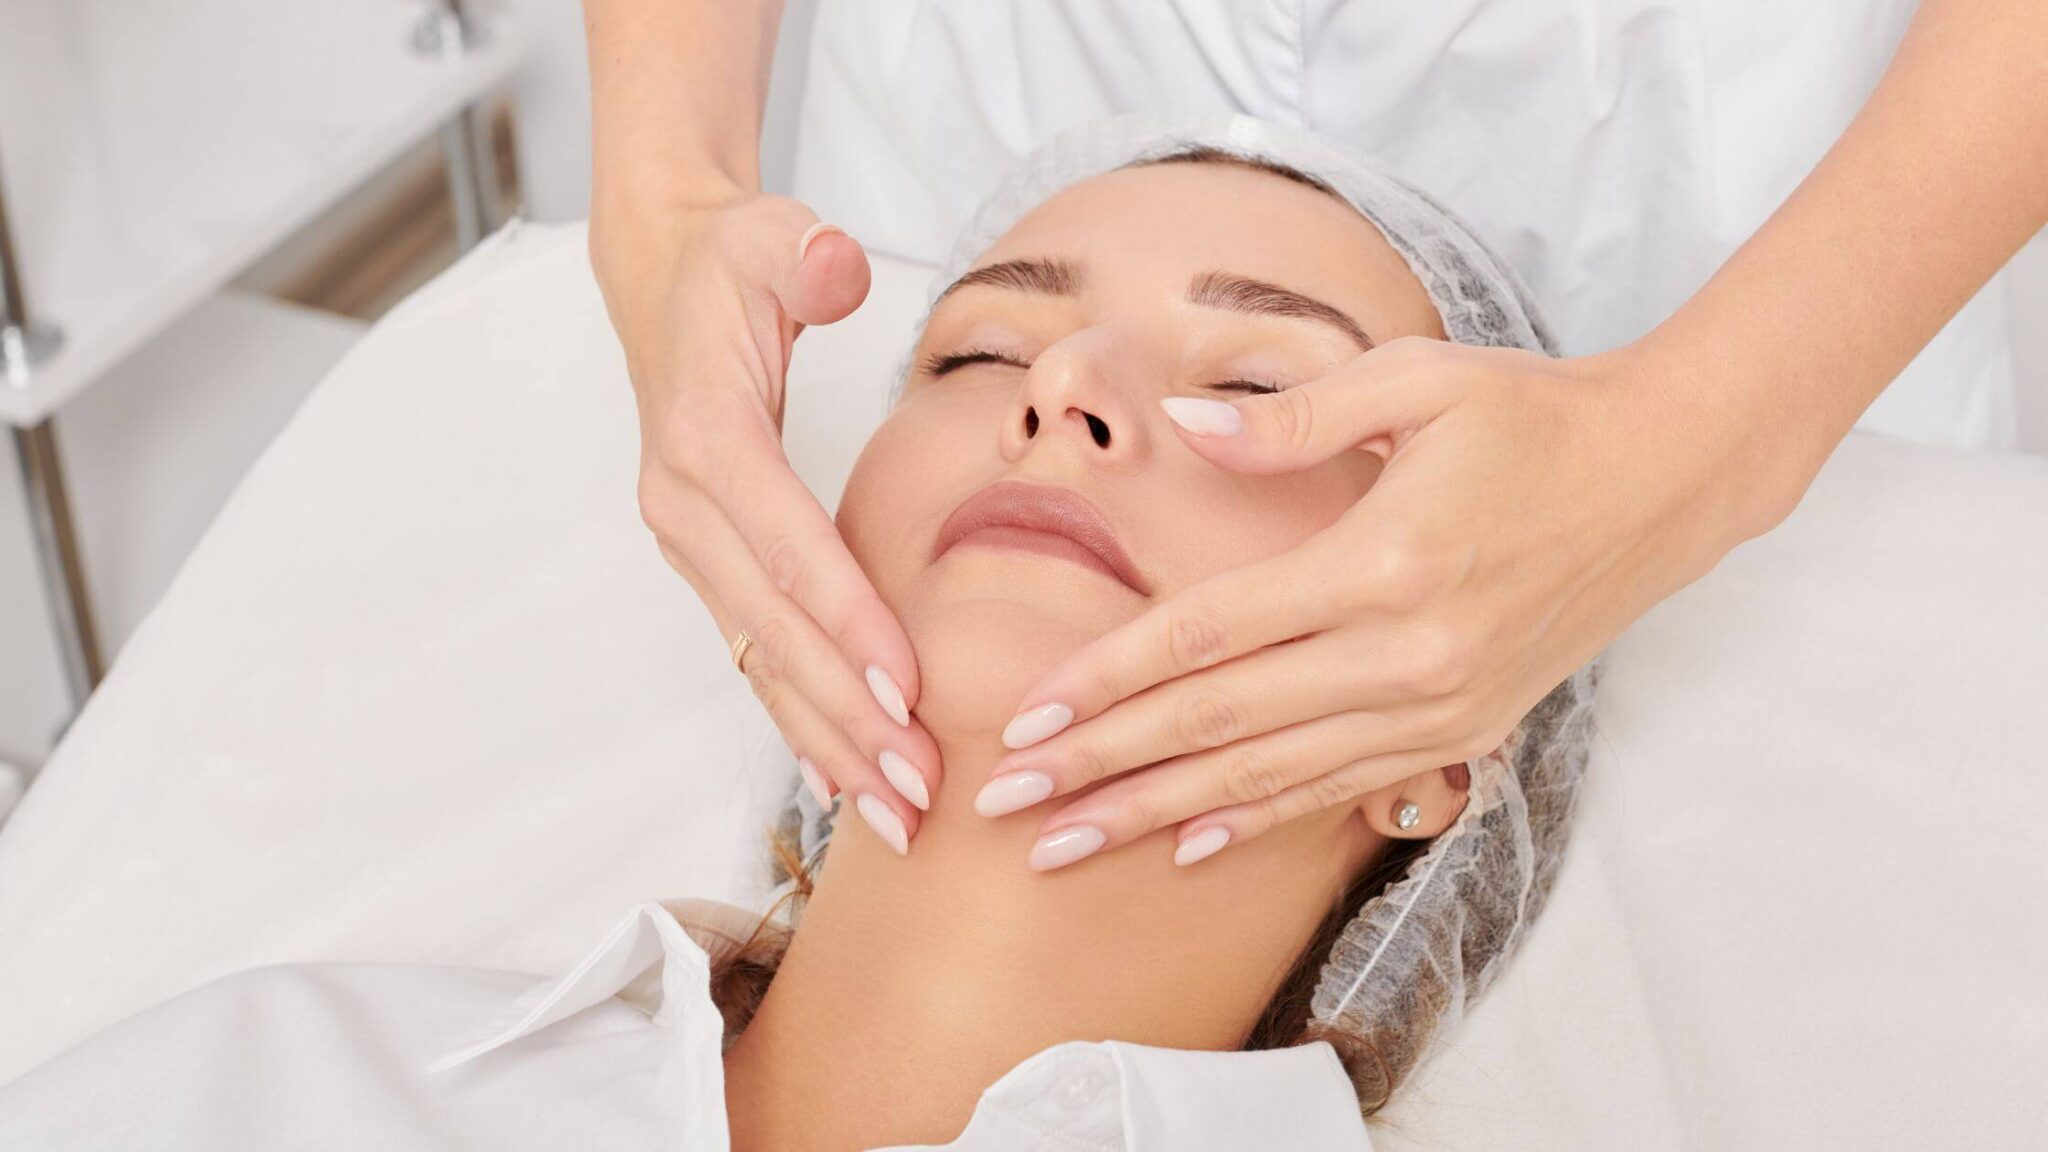 Fisioterapeuta realizando masaje de Drenaje Linfático Facial a una paciente